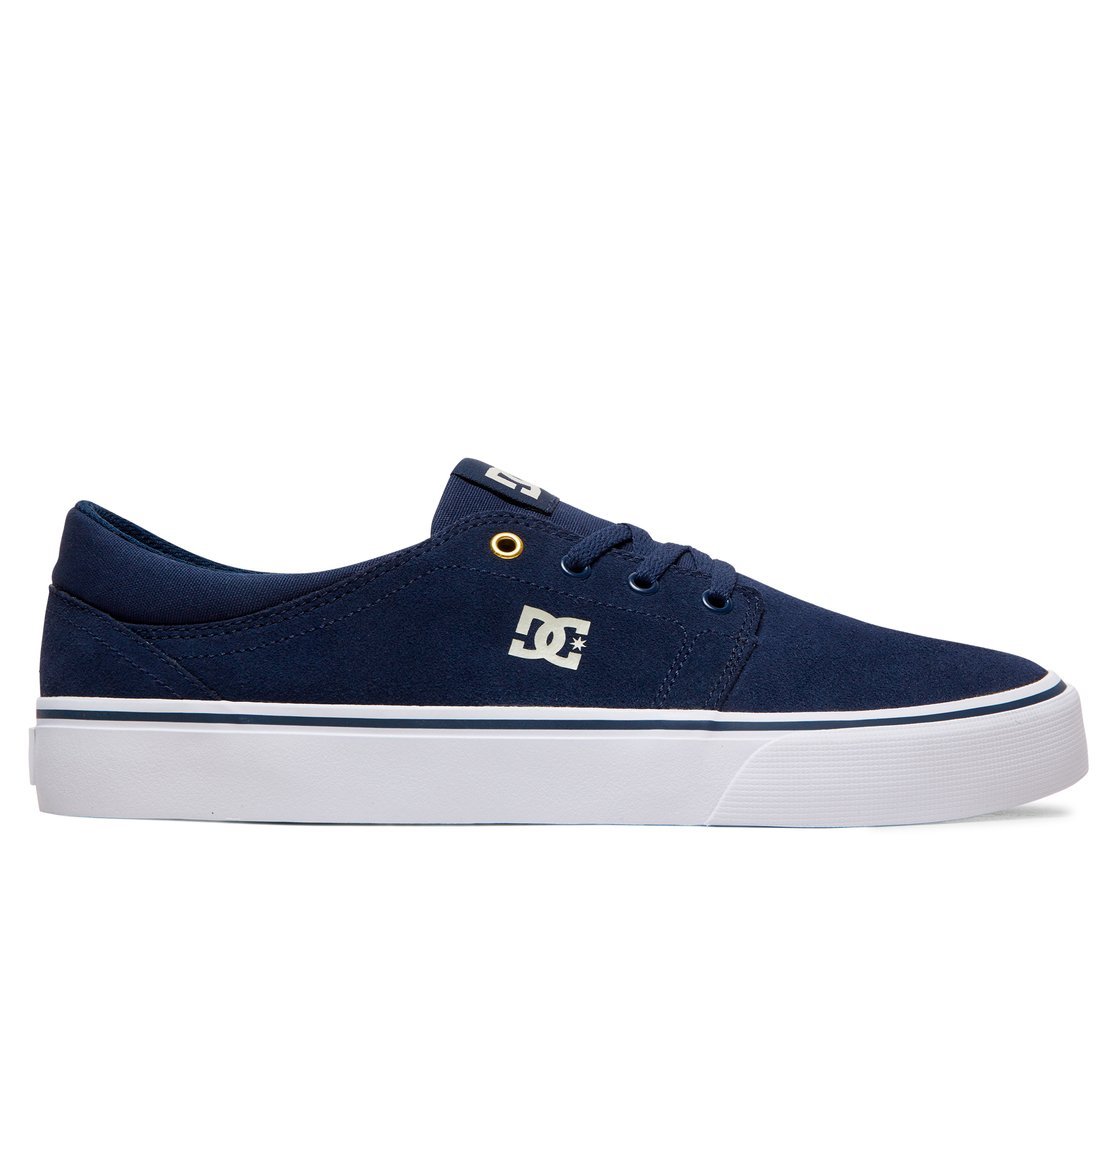 รองเท้า DC Shoes Trase SD - Navy/Blue/White [ADYS300172-NAV]